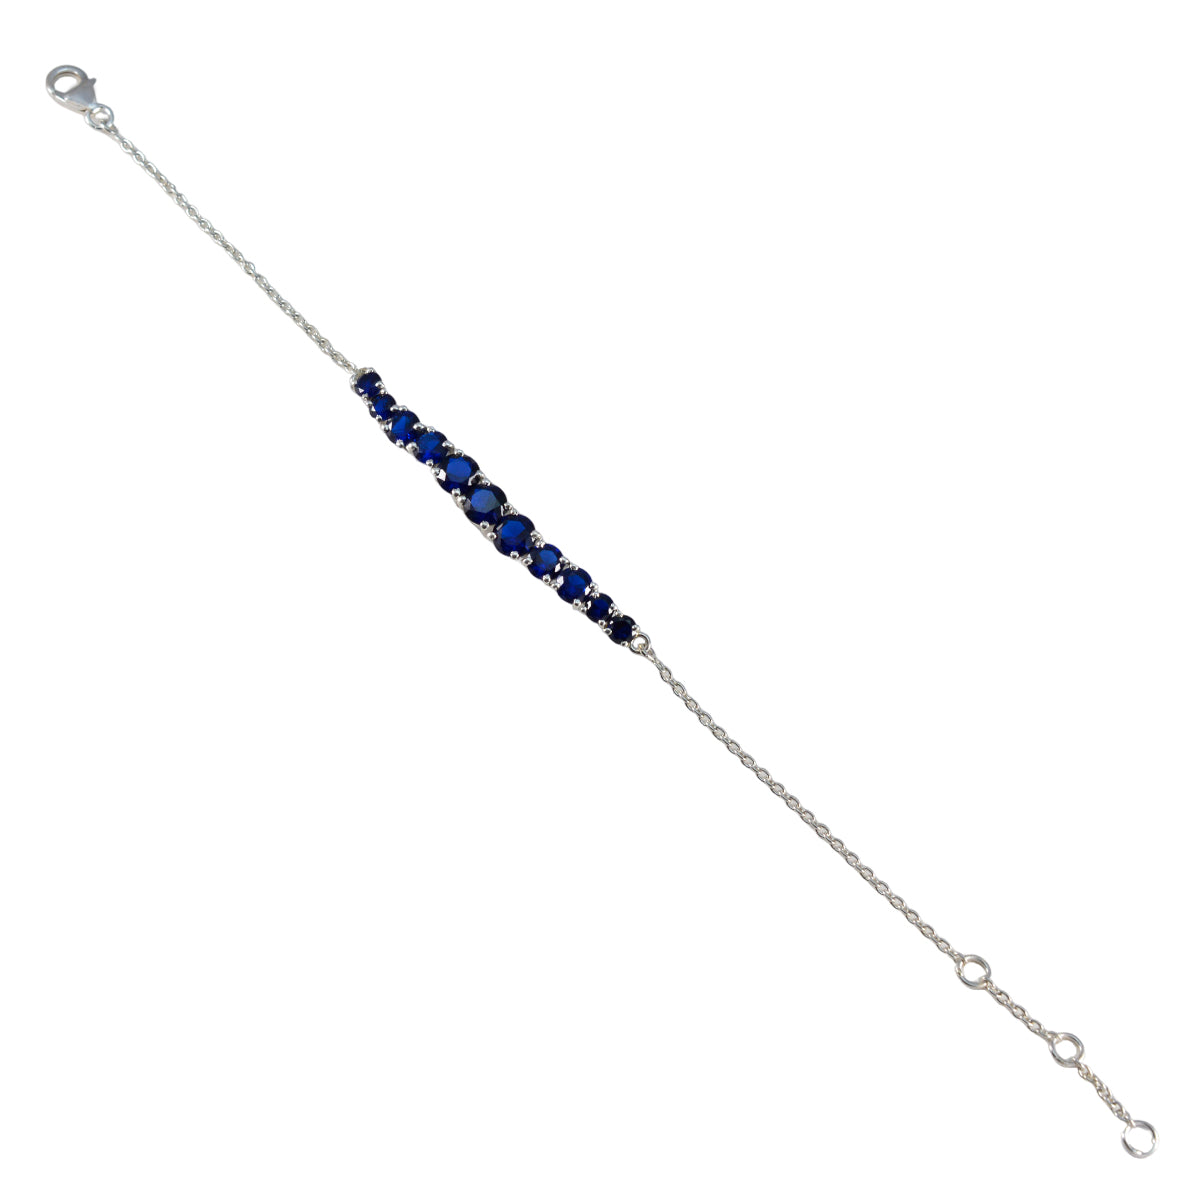 Riyo Bestes 925er-Sterlingsilber-Armband für Mädchen, blaues Supphire-CZ-Armband, Krappenfassung-Armband, Angelhaken-Tennisarmband, L, Größe 15,2–21,6 cm.